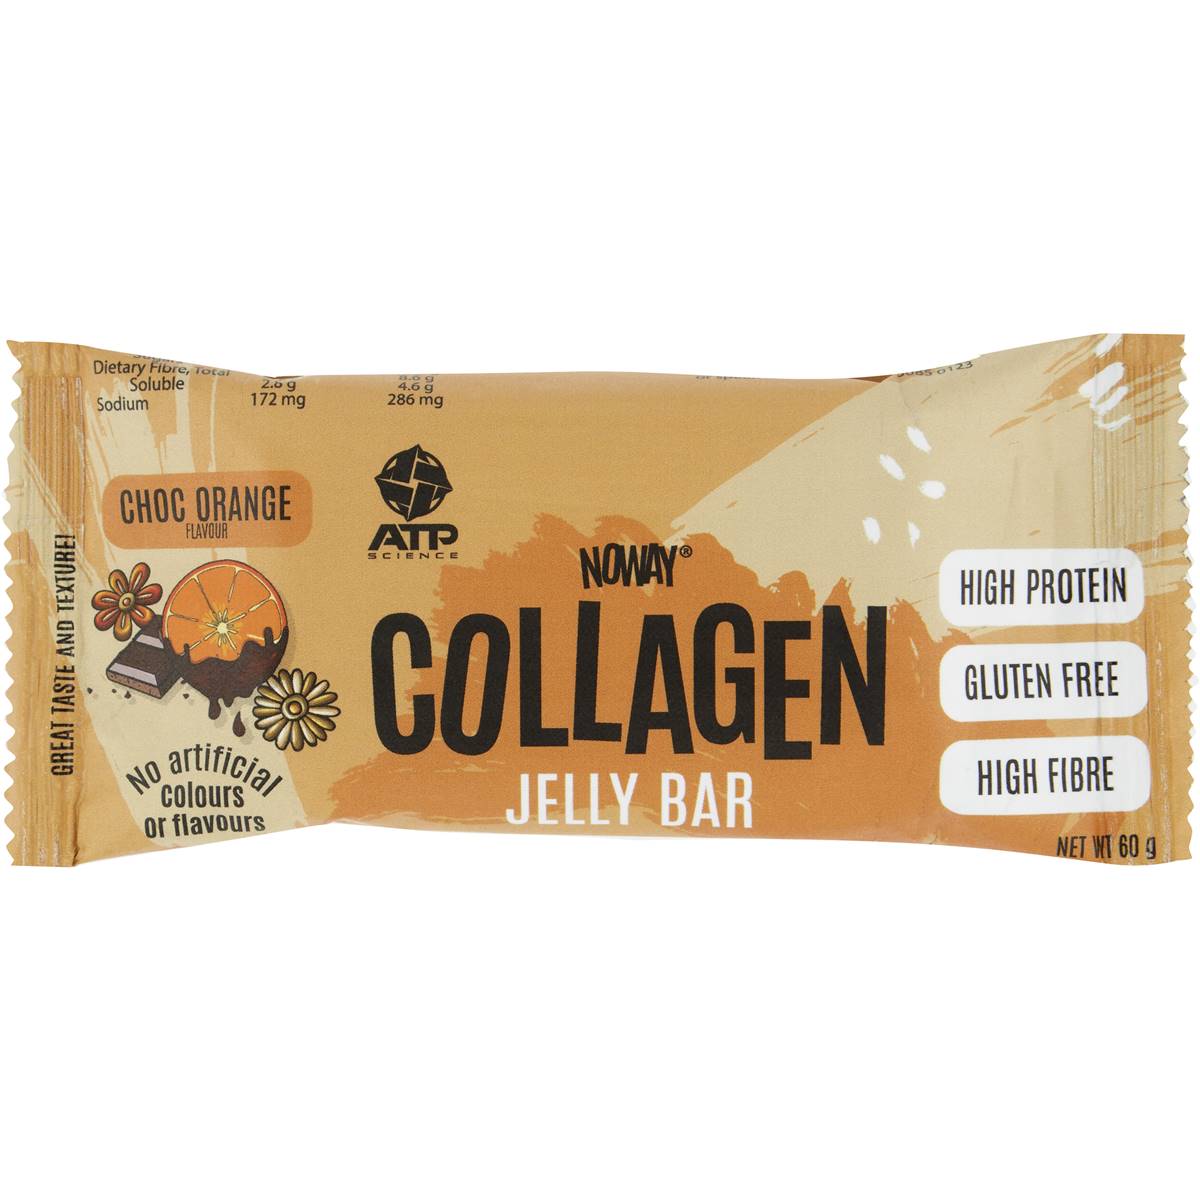 Calories in No Way Collagen Choc Orange Jelly Bar